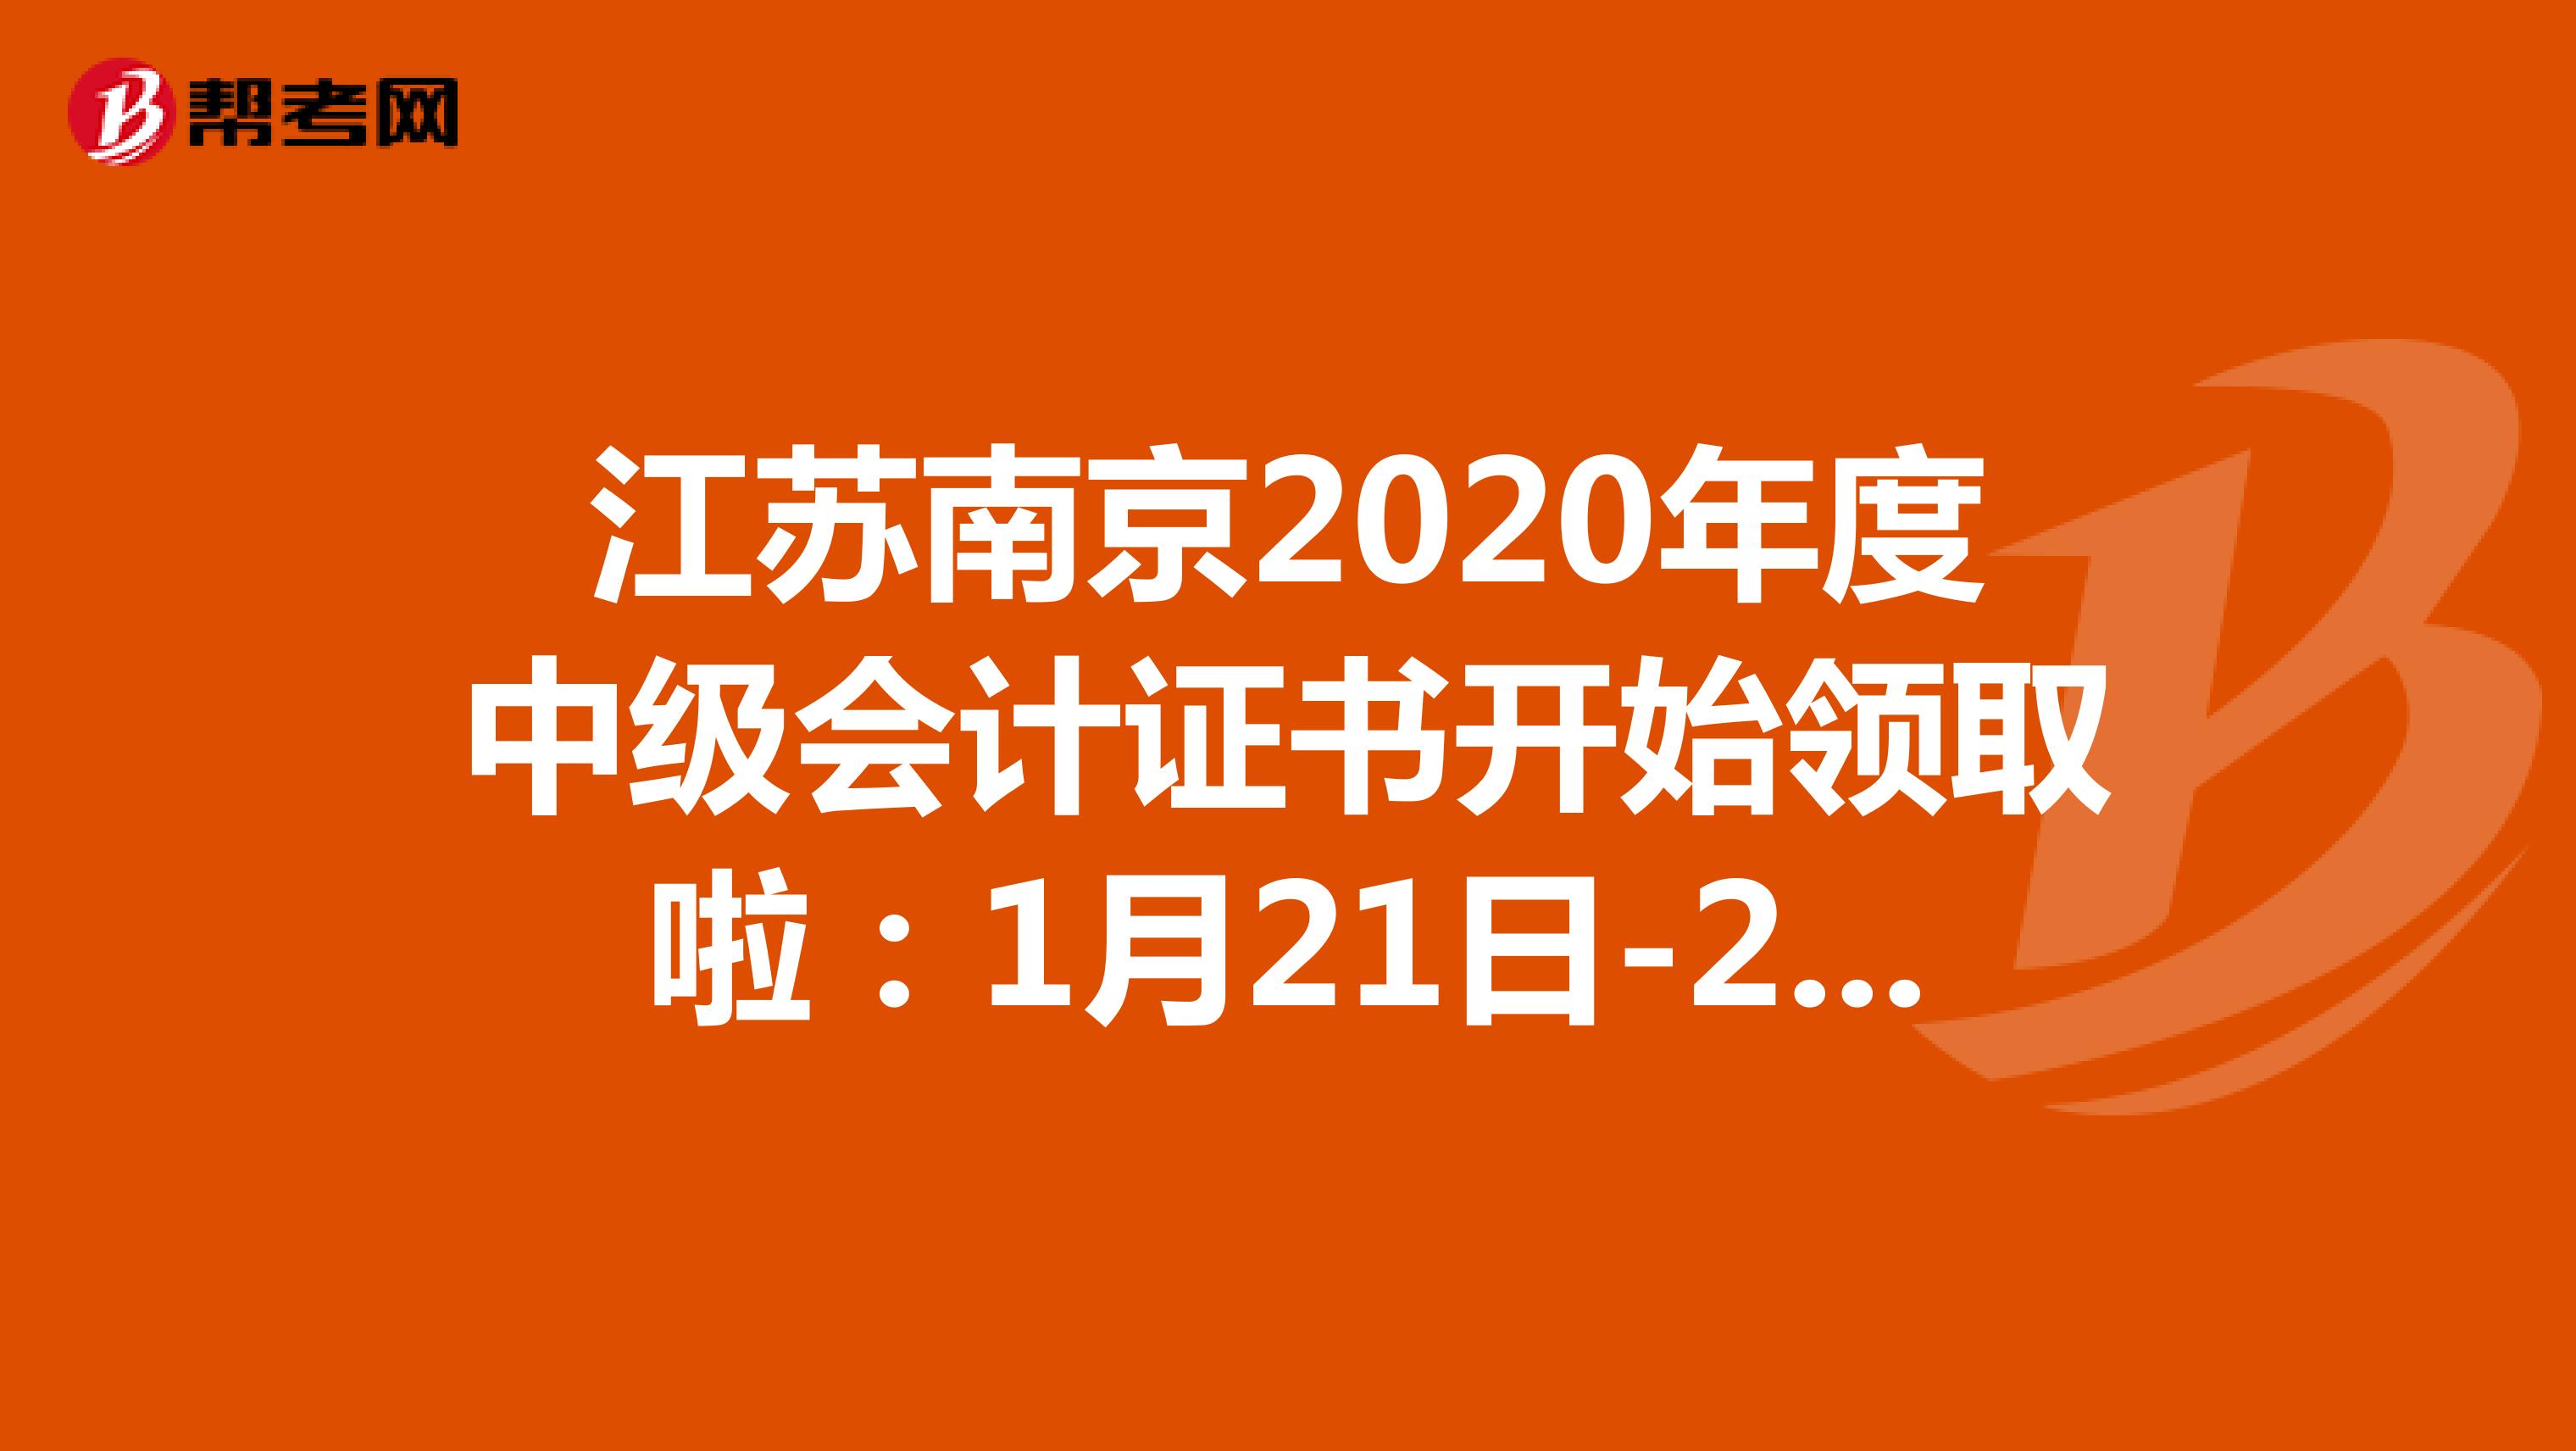 江苏南京2020年度中级会计证书开始领取啦：1月21日-2月10日